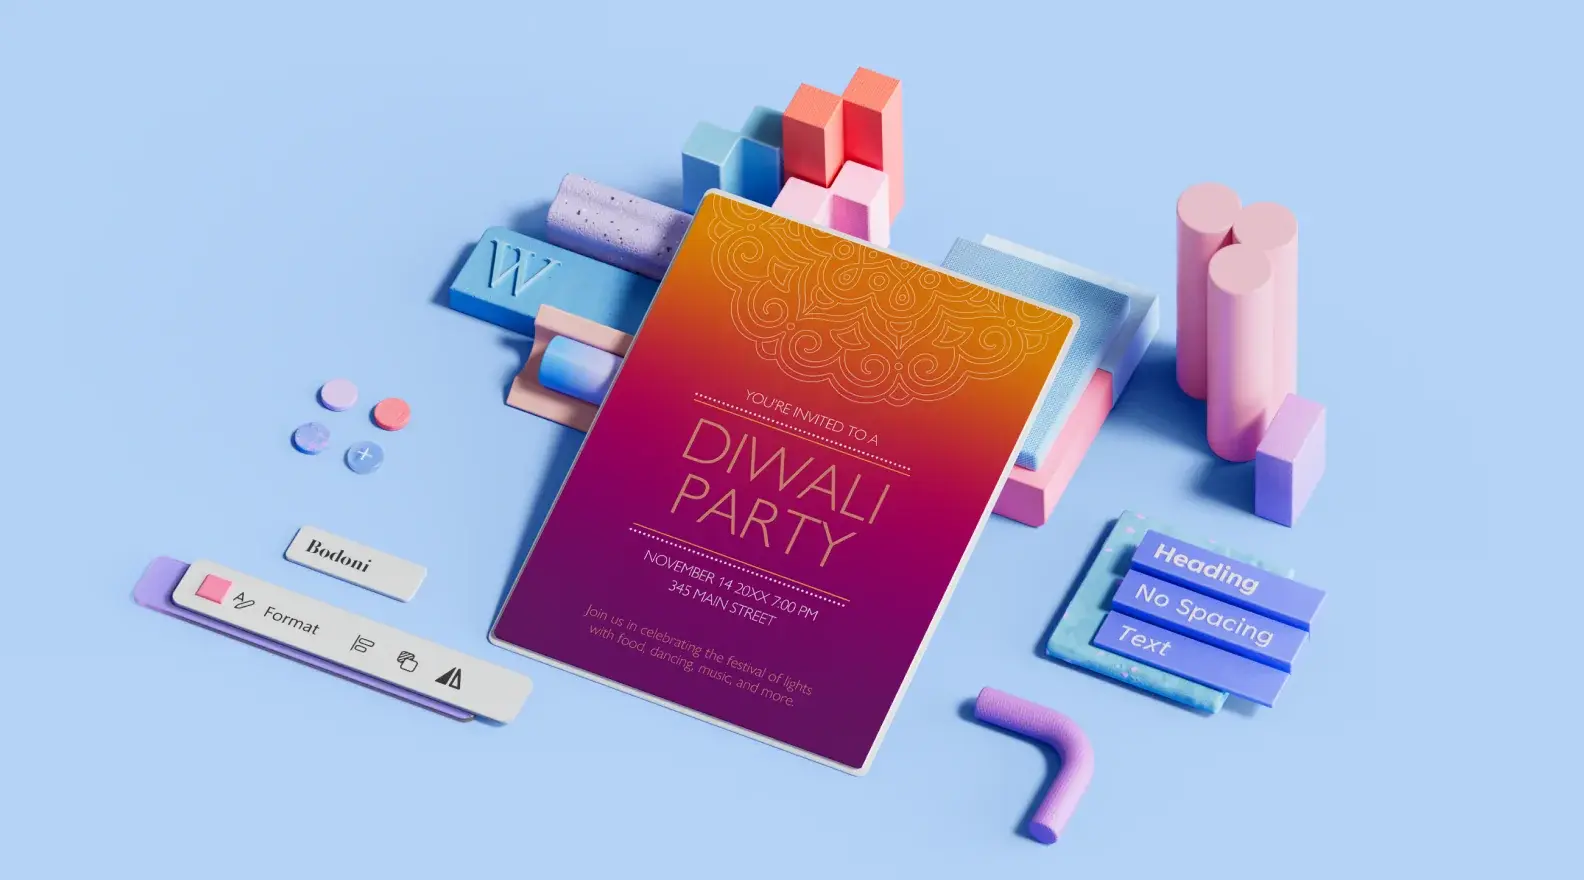 Modelli di poster per Diwali arricchito con elementi di design in 3D